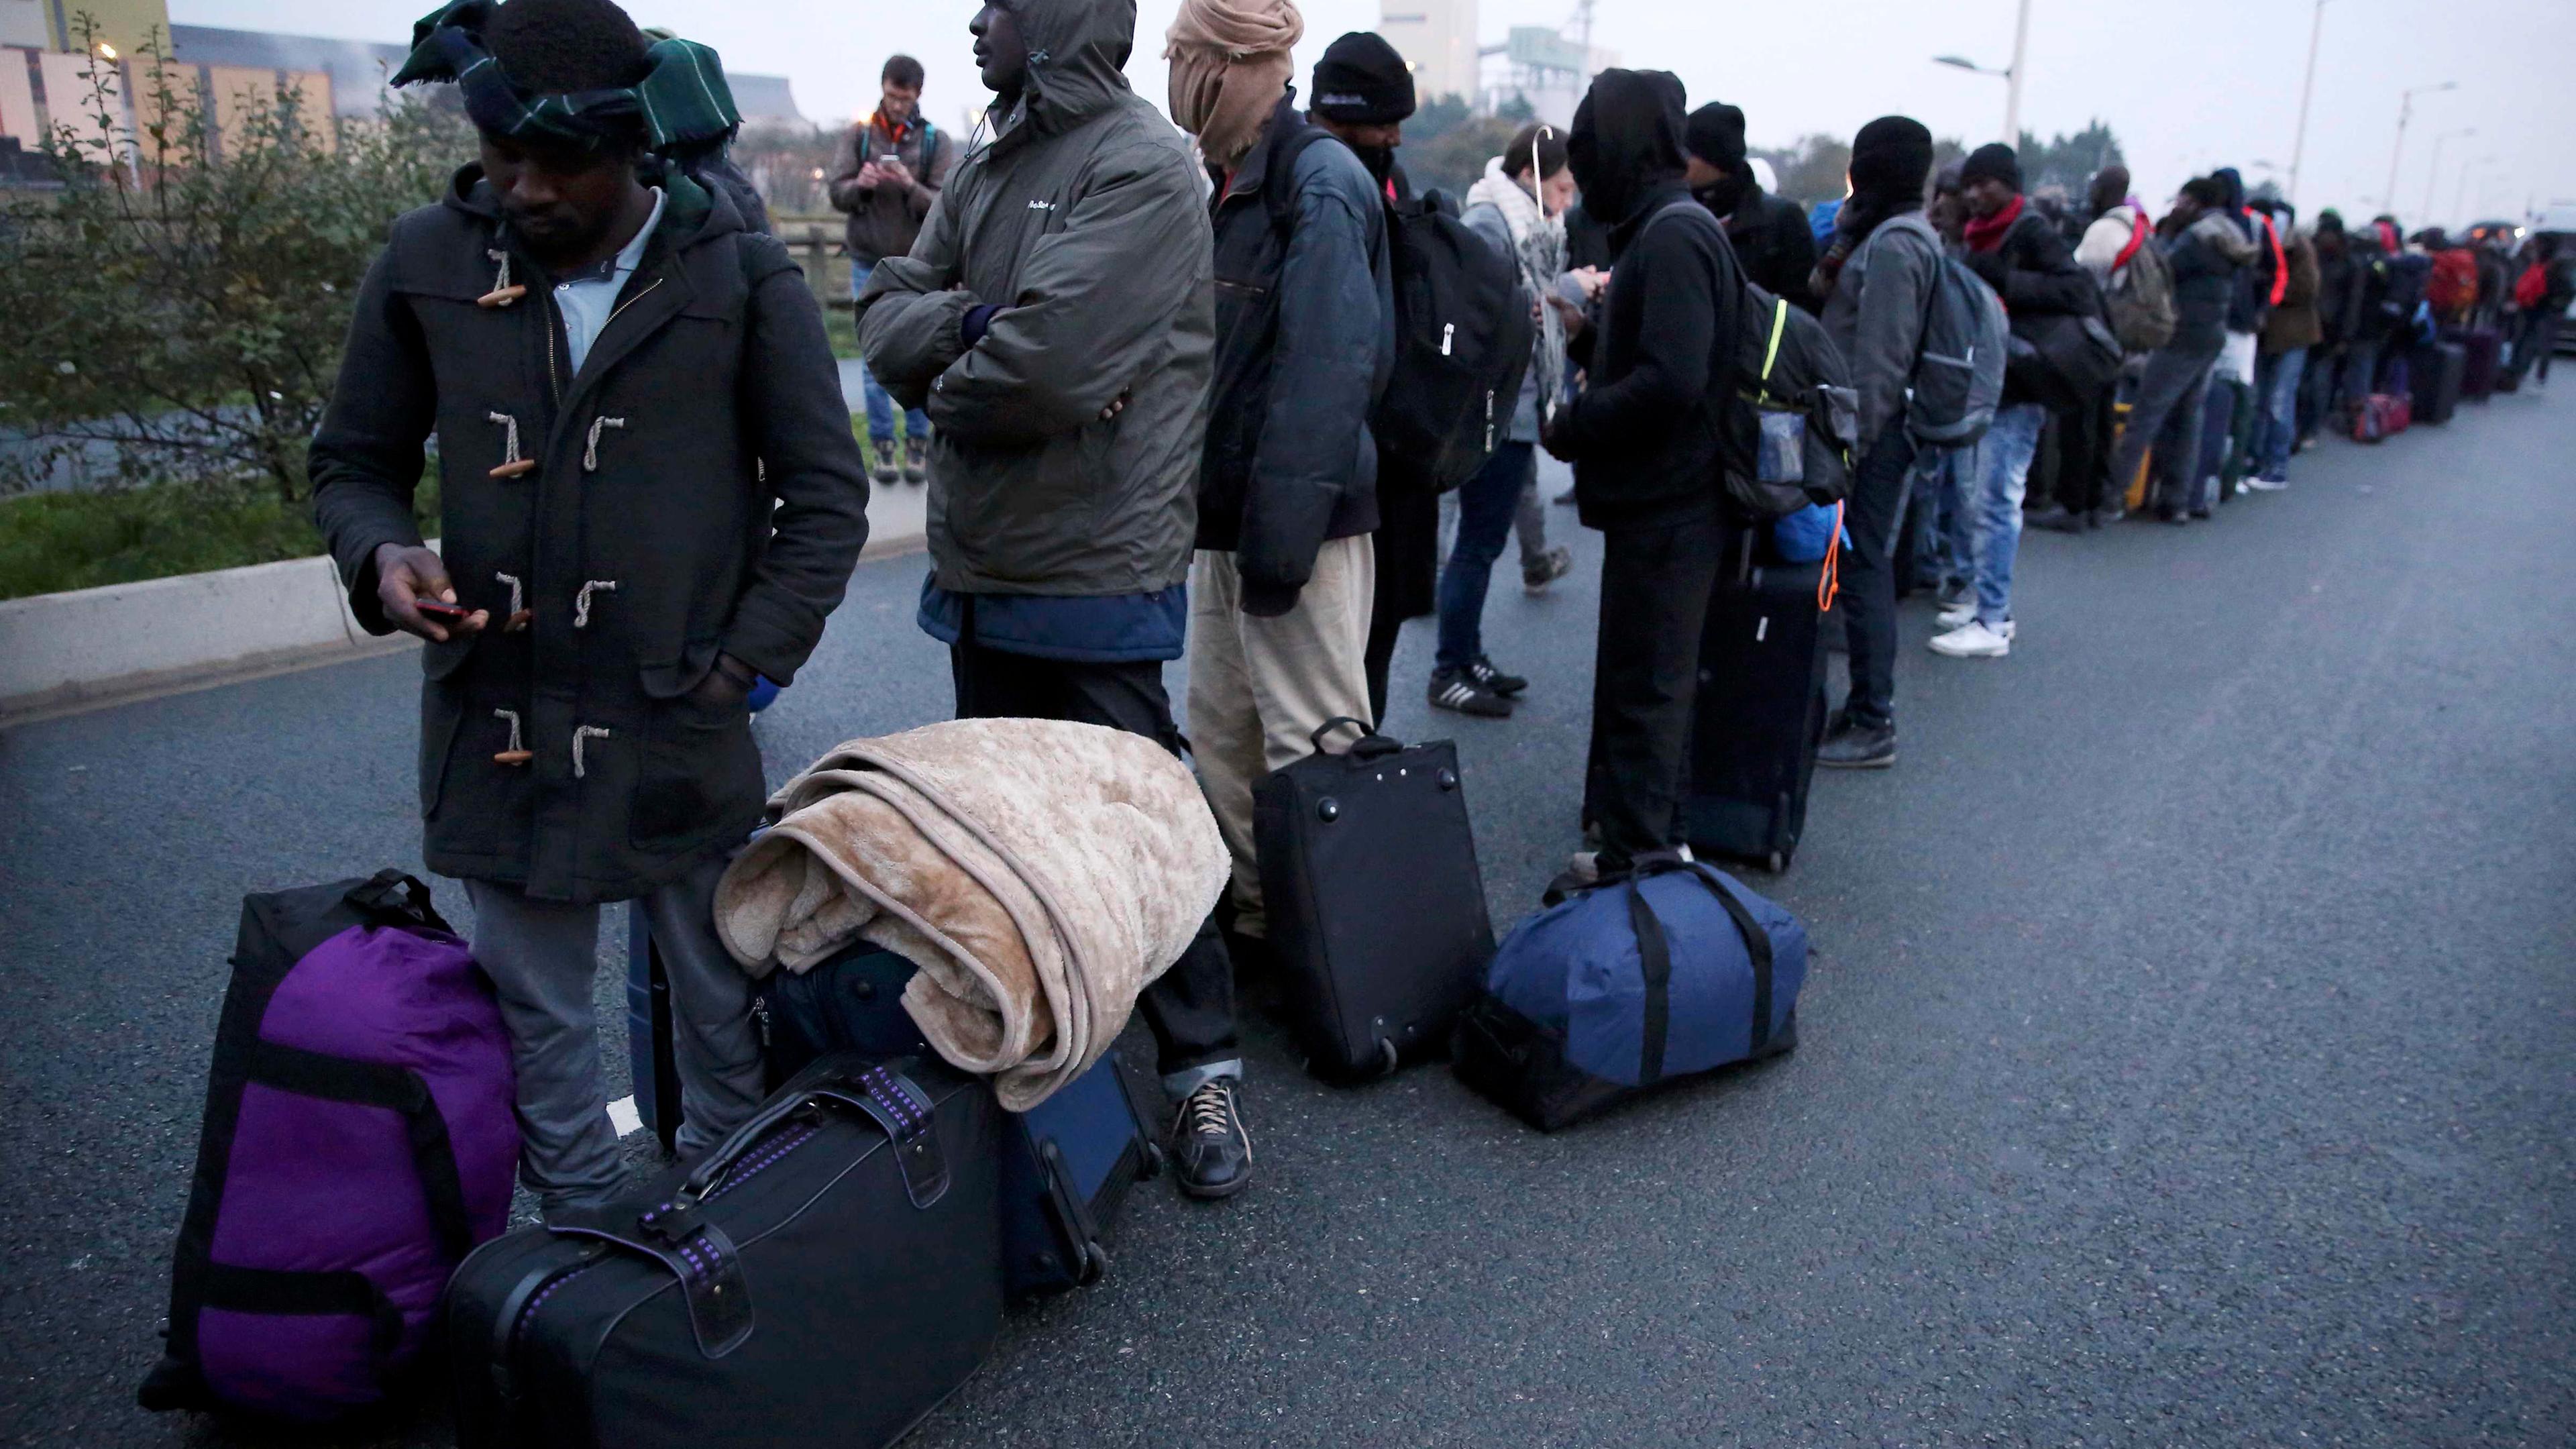 Archiv: Migranten mit ihren Habseligkeiten in Calais am 24.10.2016